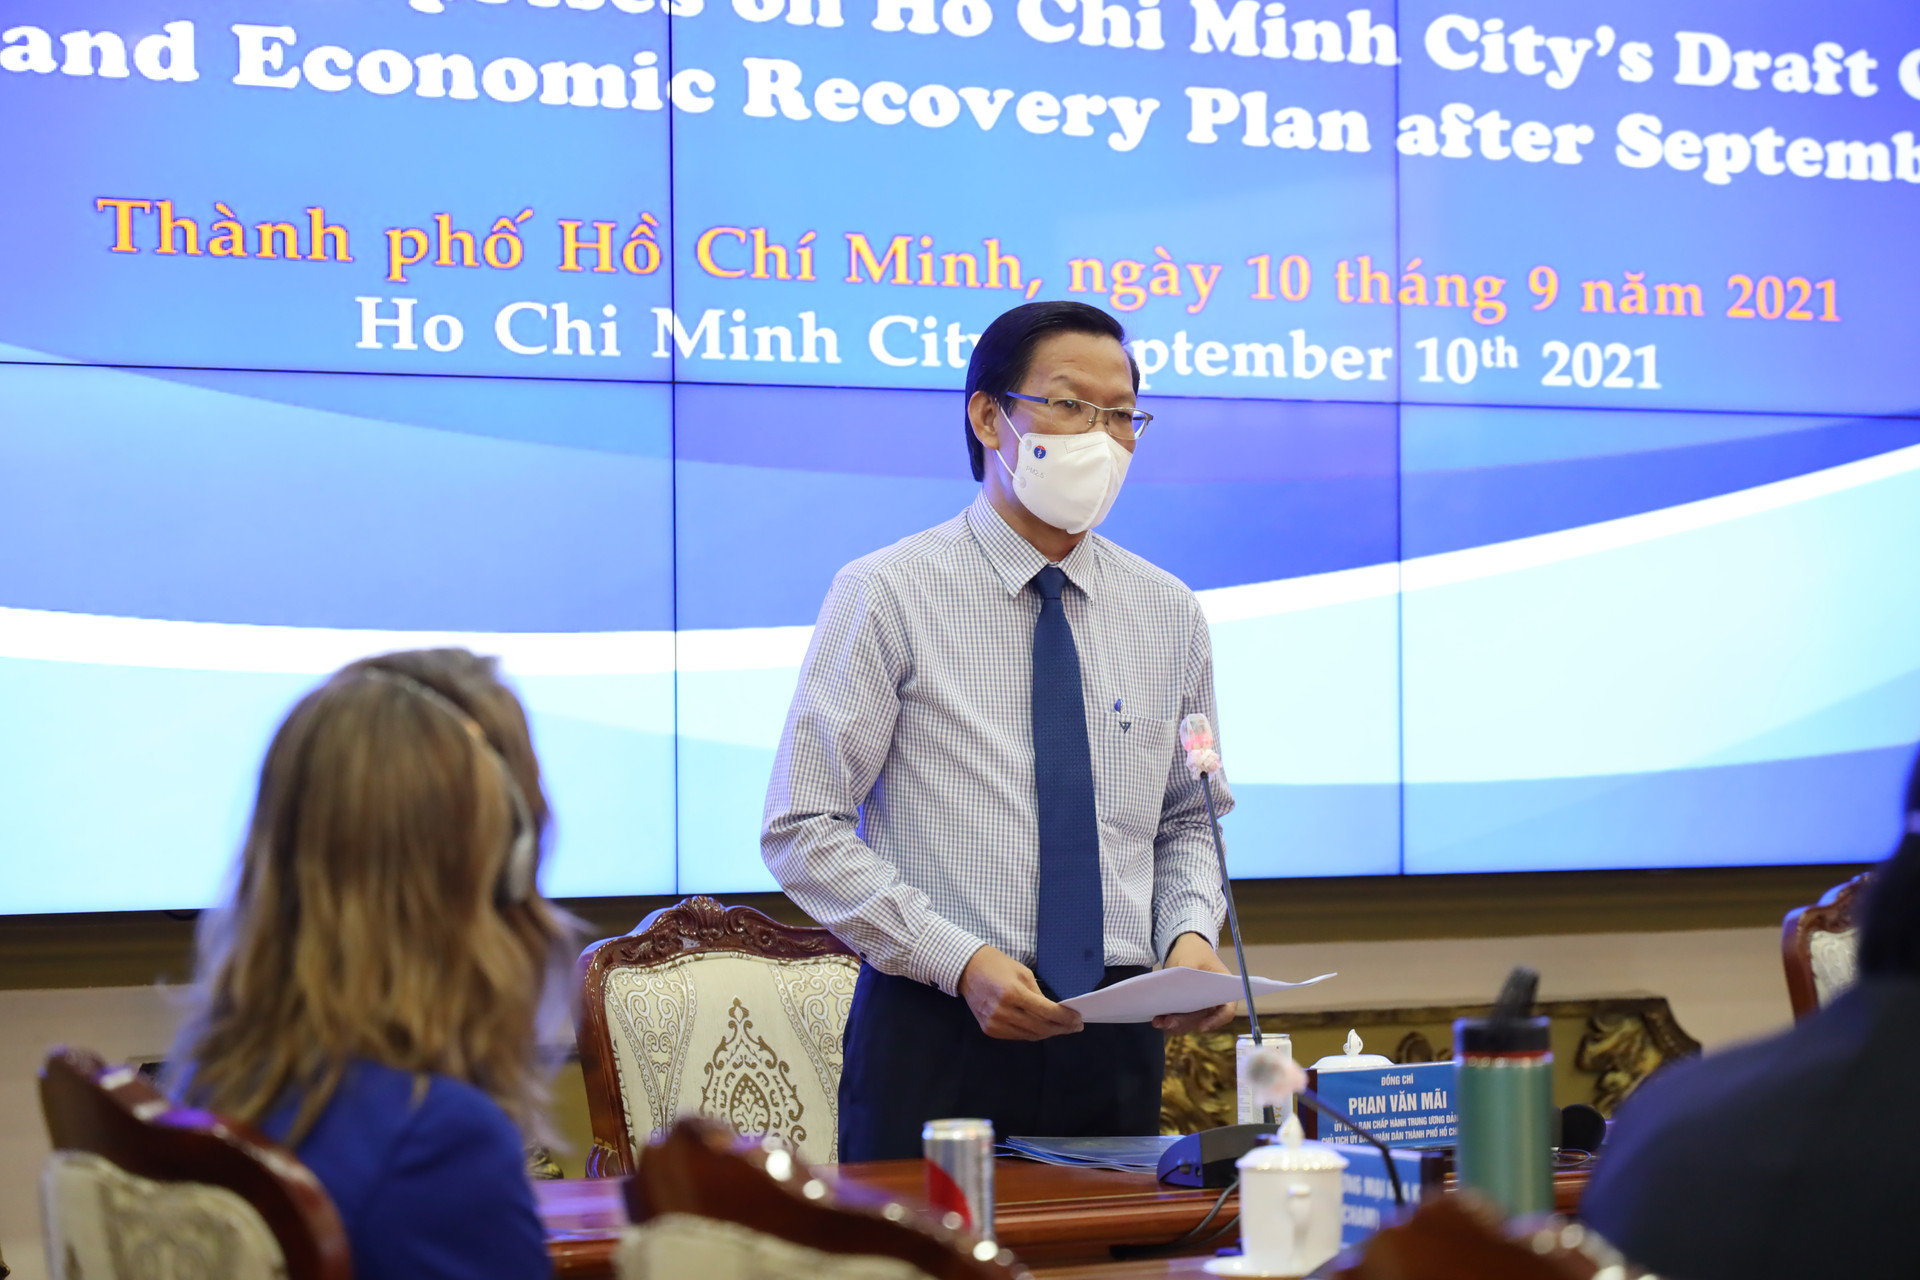 Chủ tịch UBND TP HCM Phan Văn Mãi trong ngày 10/9 đã đề ra 5 quan điểm, nguyên tắc để mở cửa nền kinh tế thành phố. (Ảnh: HMC).